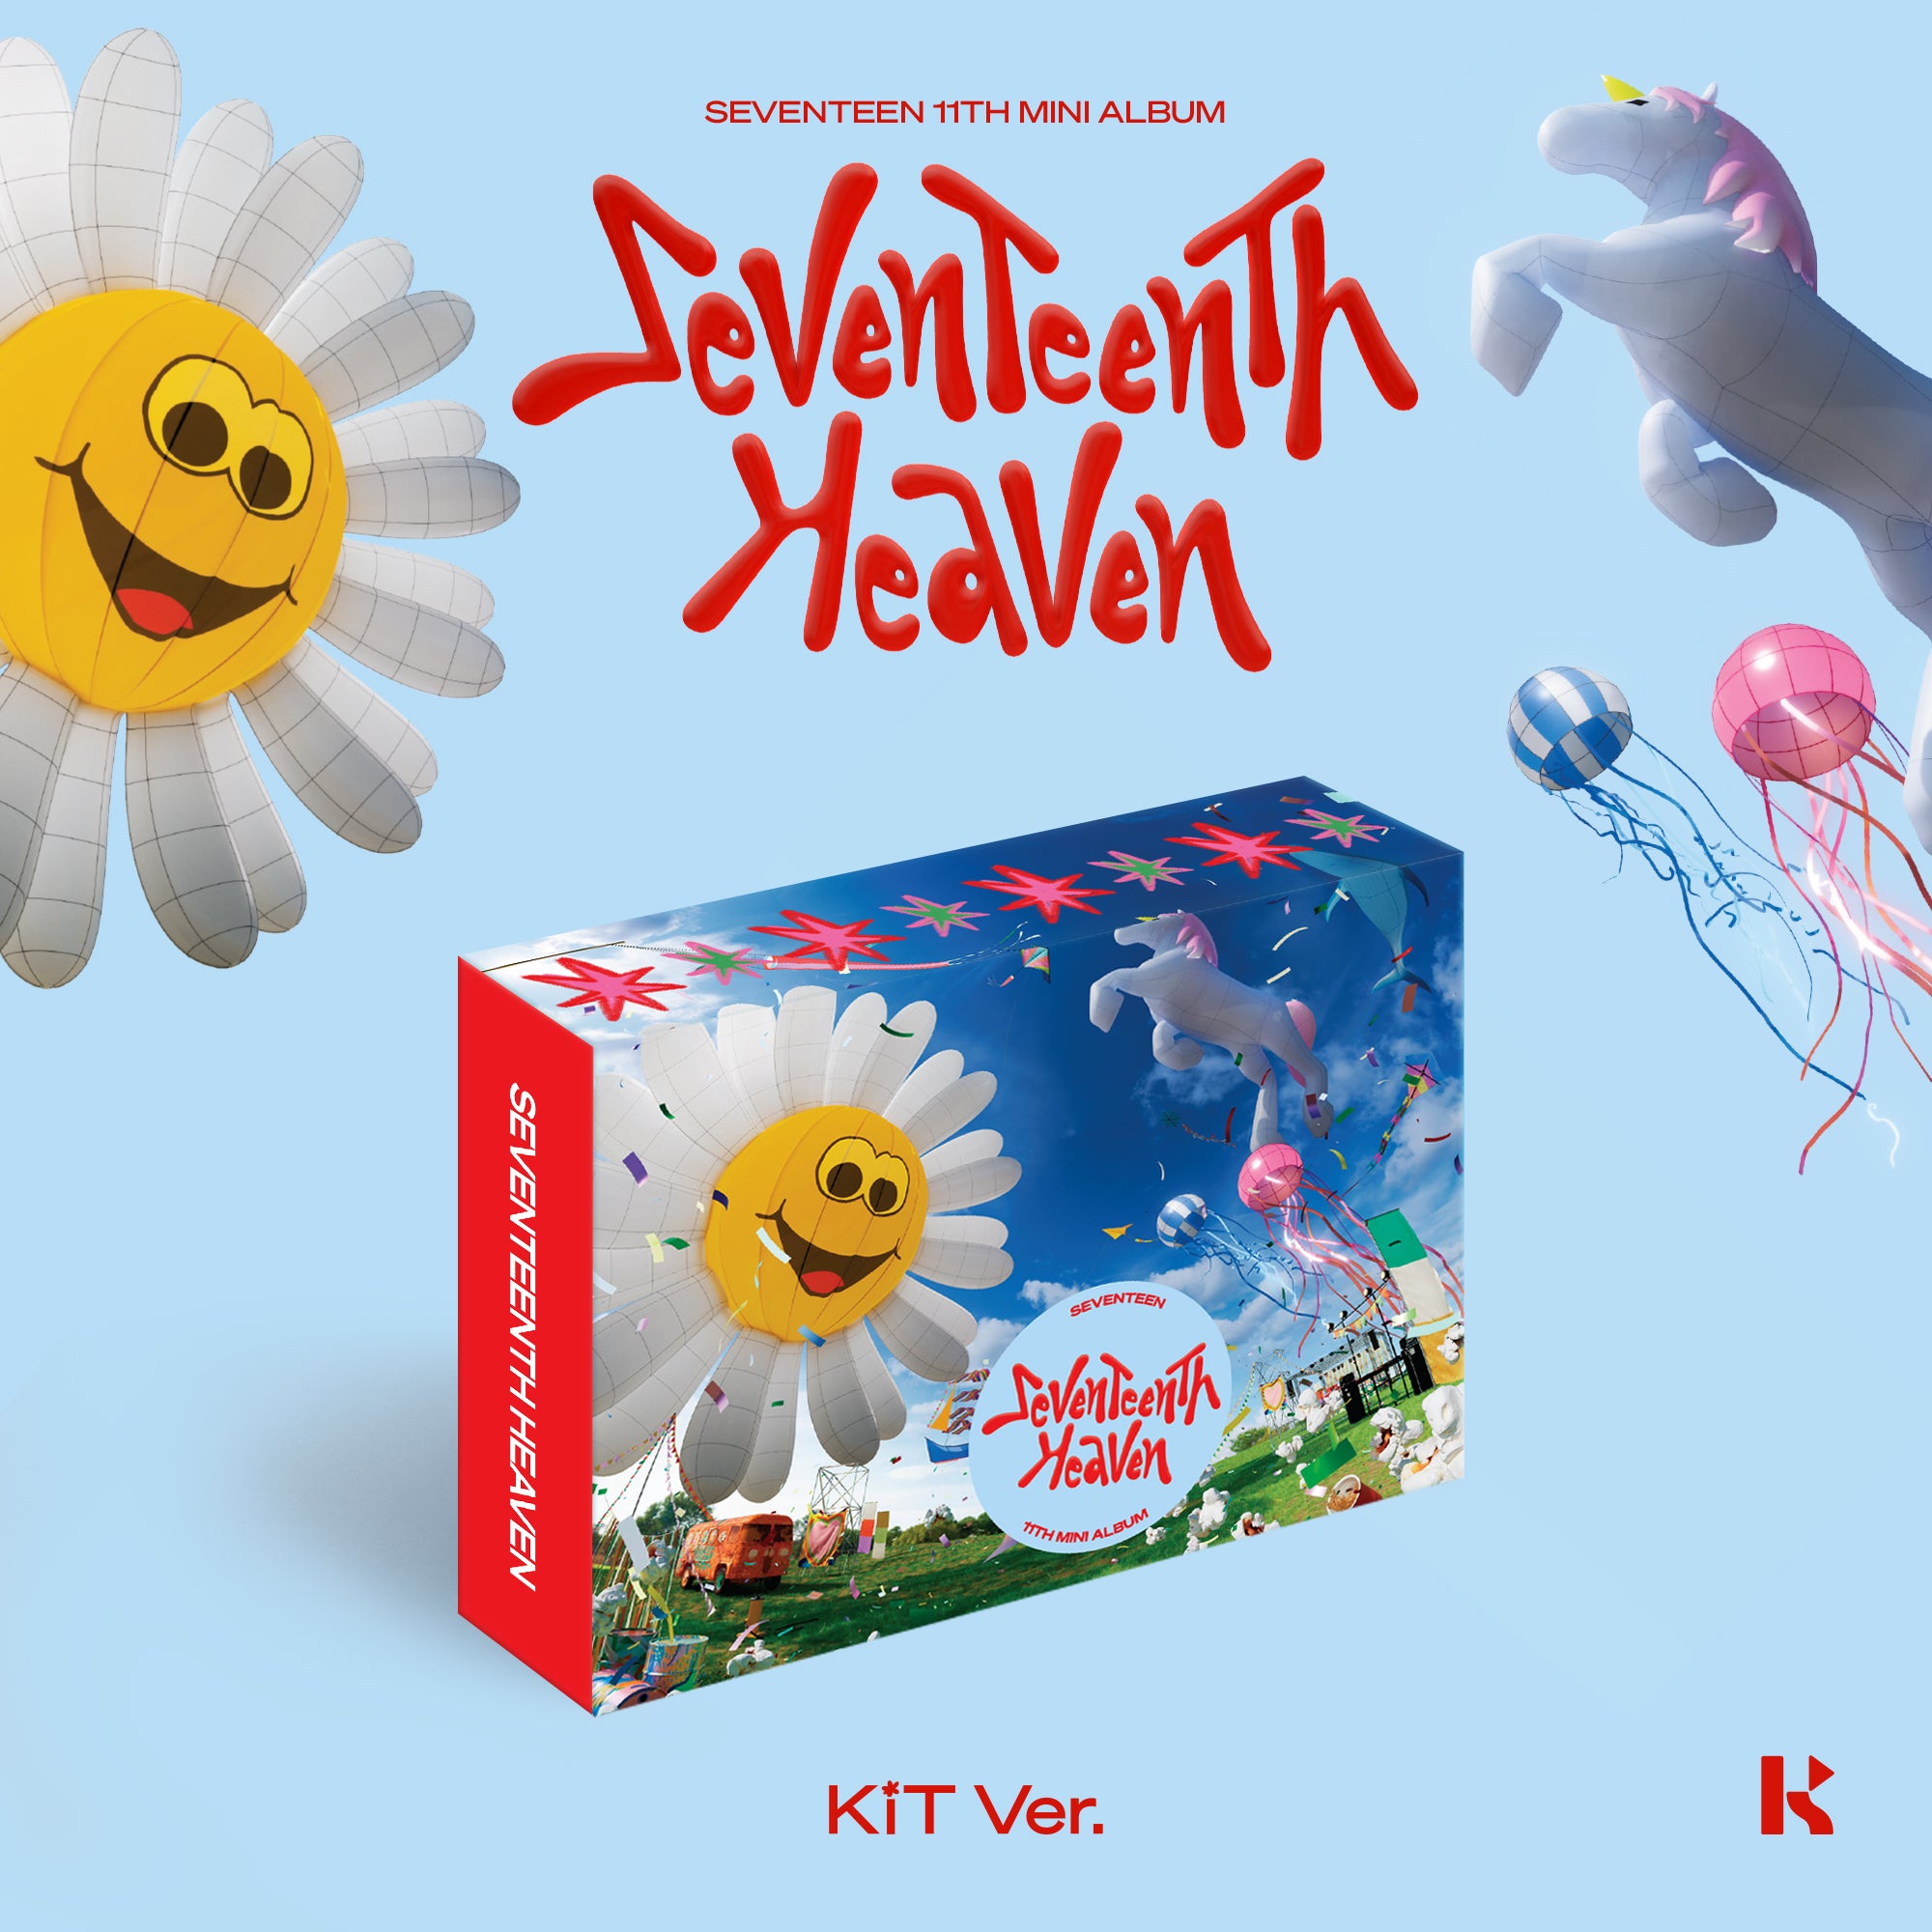 SEVENTEEN - SEVENTEENTH HEAVEN (KiT ver.) – Kpop Planet